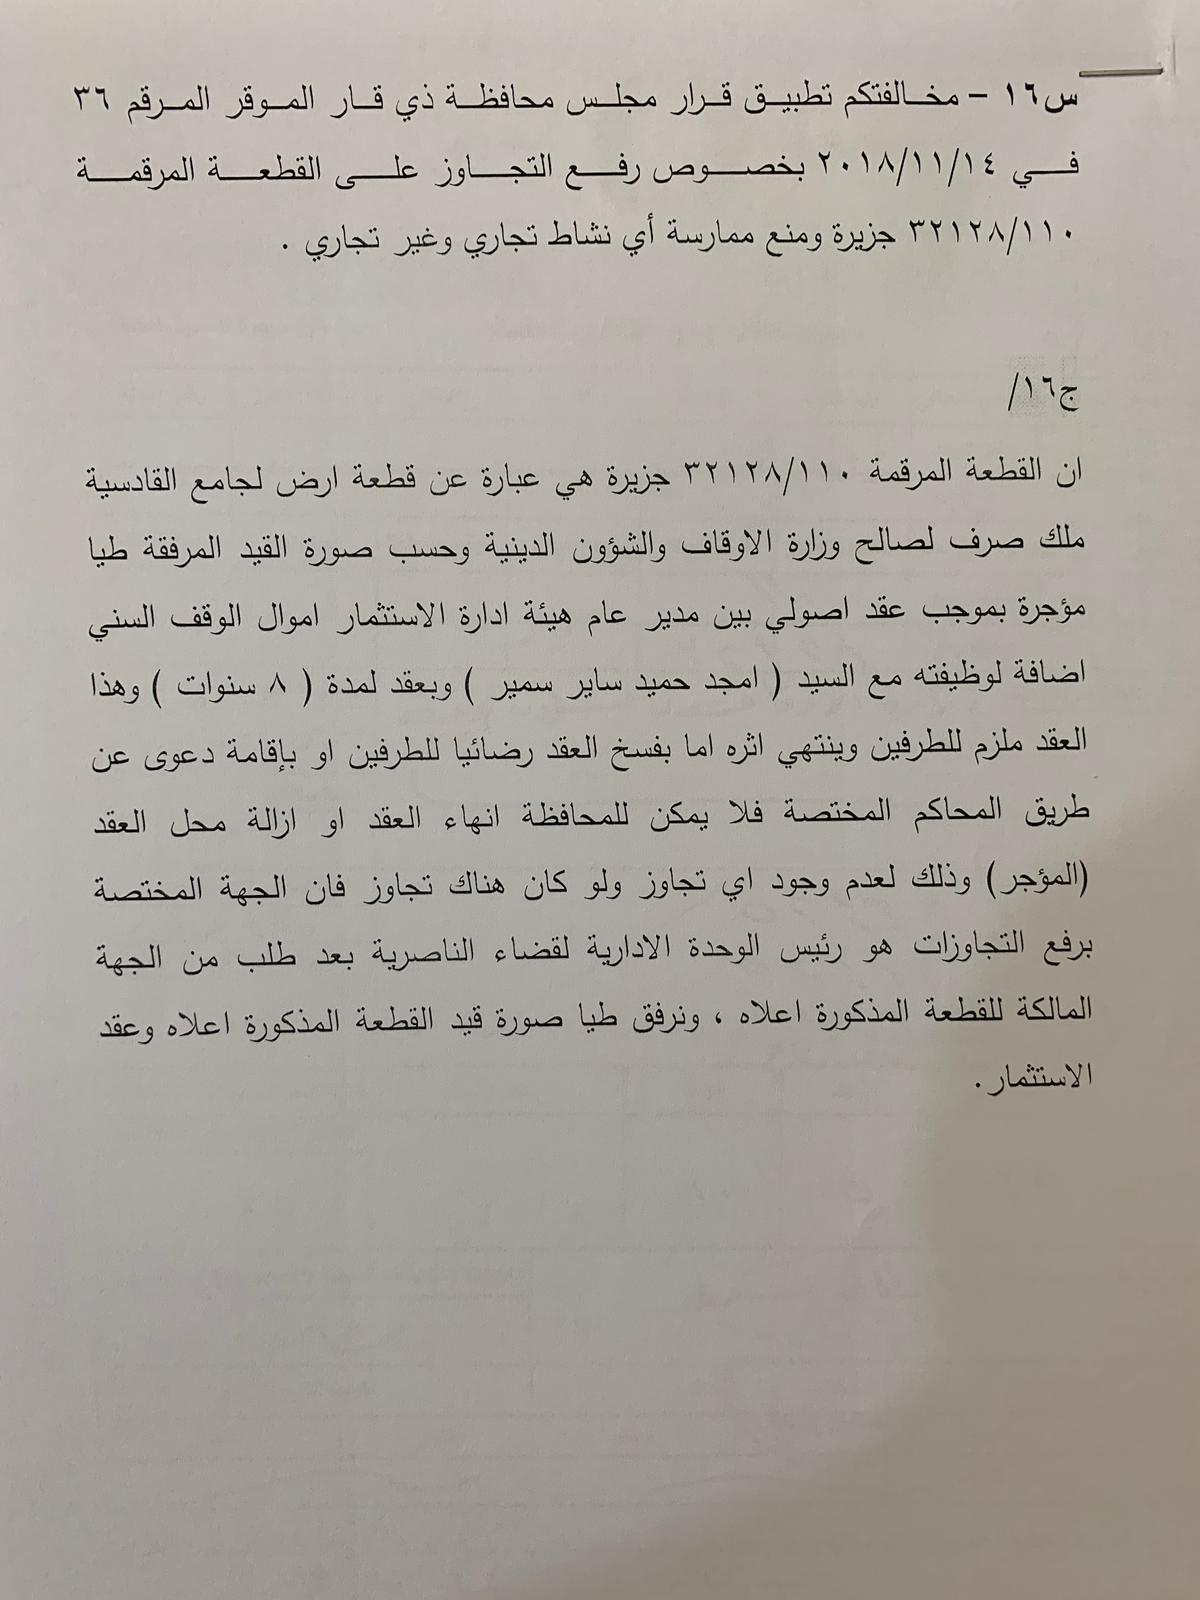 مجلس محافظة ذي قار يطرد المحافظ نجل اية اللة العظمى الناصري